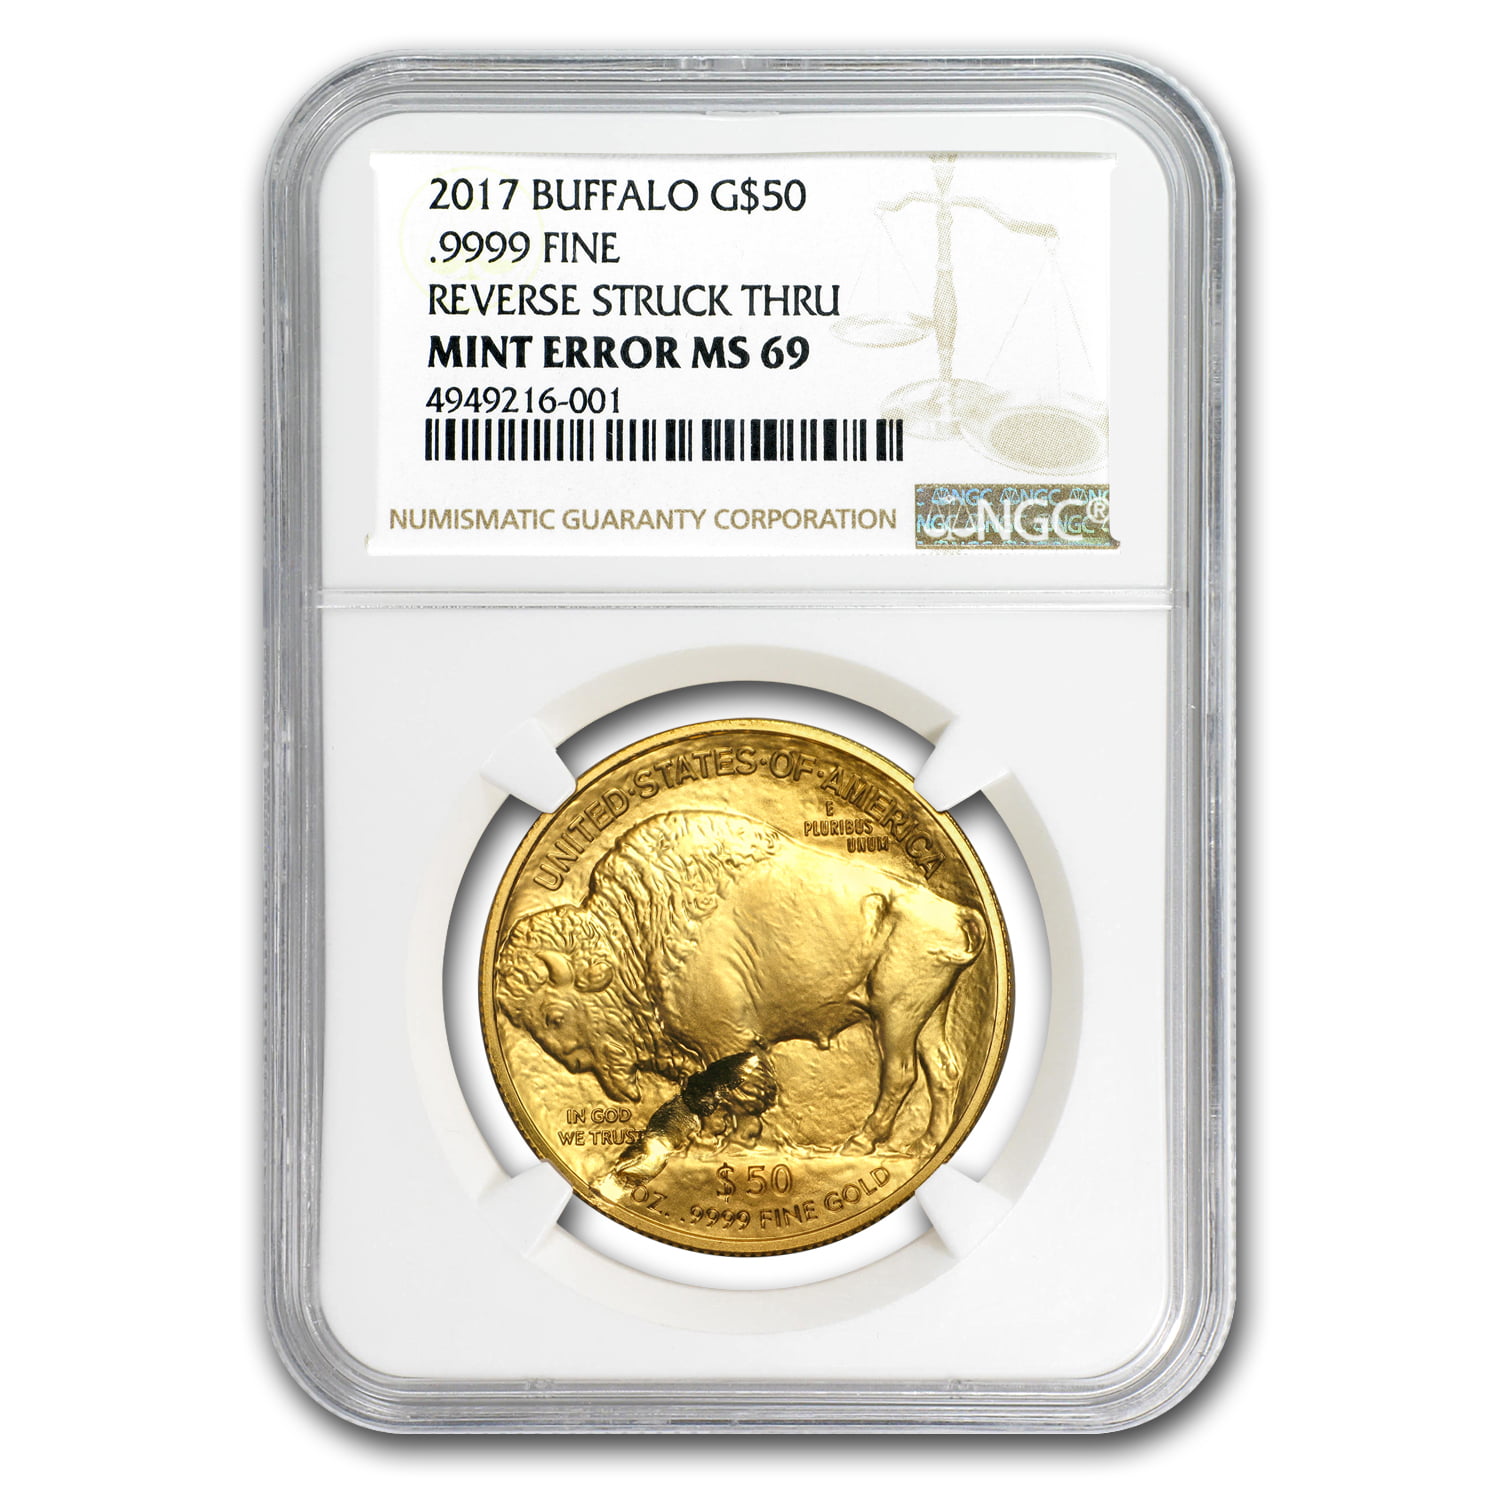 2017 1 oz Gold Buffalo (Mint Error, Rev Struck Thru) - Walmart.com